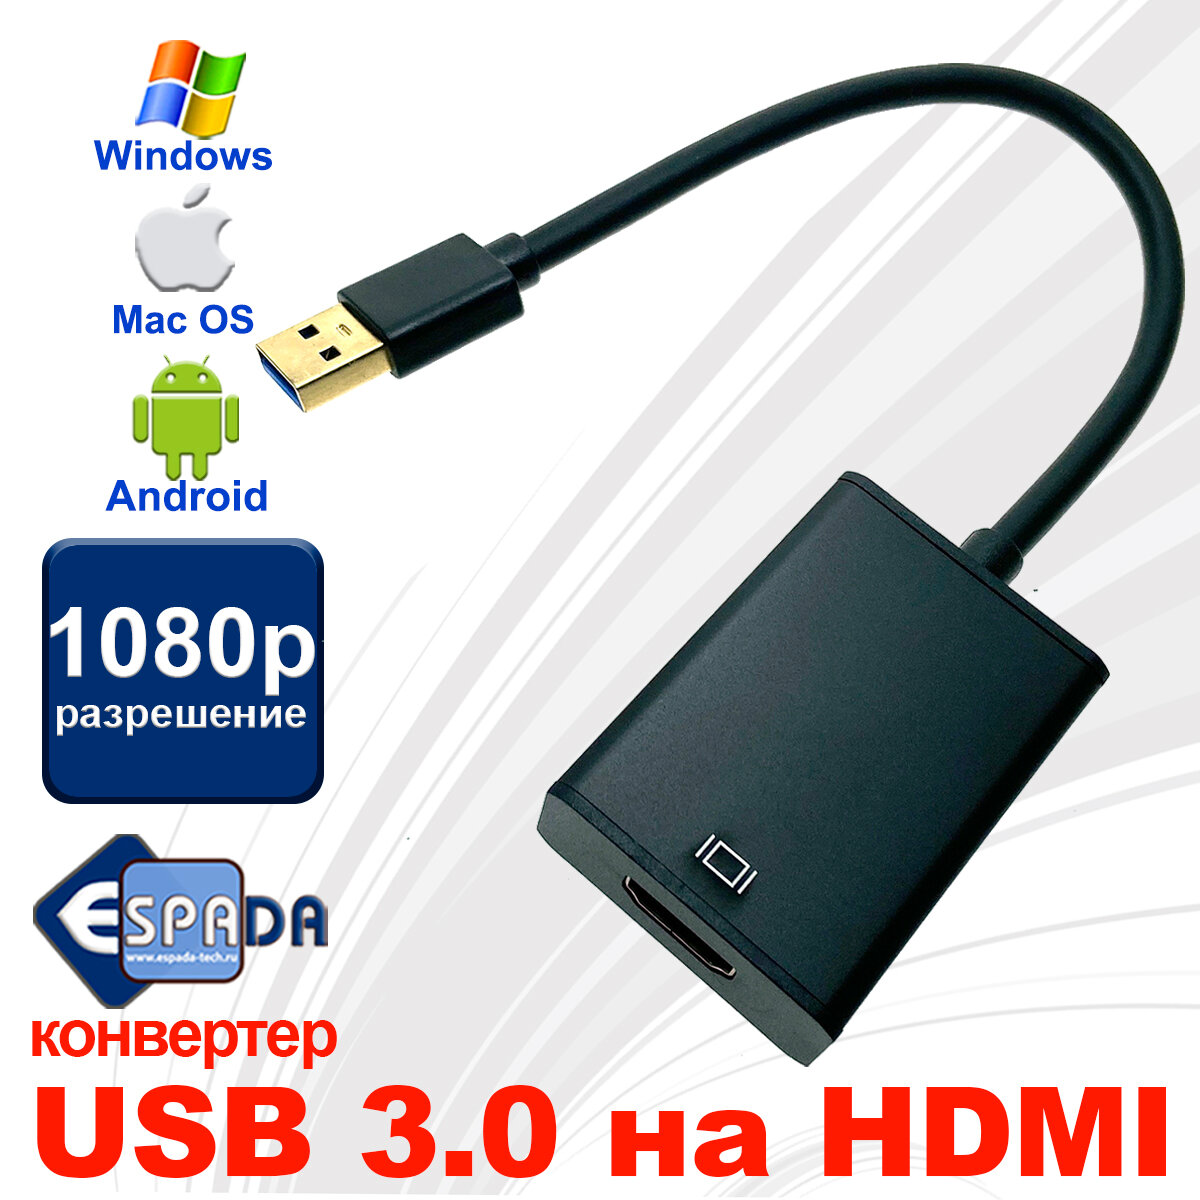 Видео конвертер USB 3.0 to HDMI, EU3HDMI, Espada